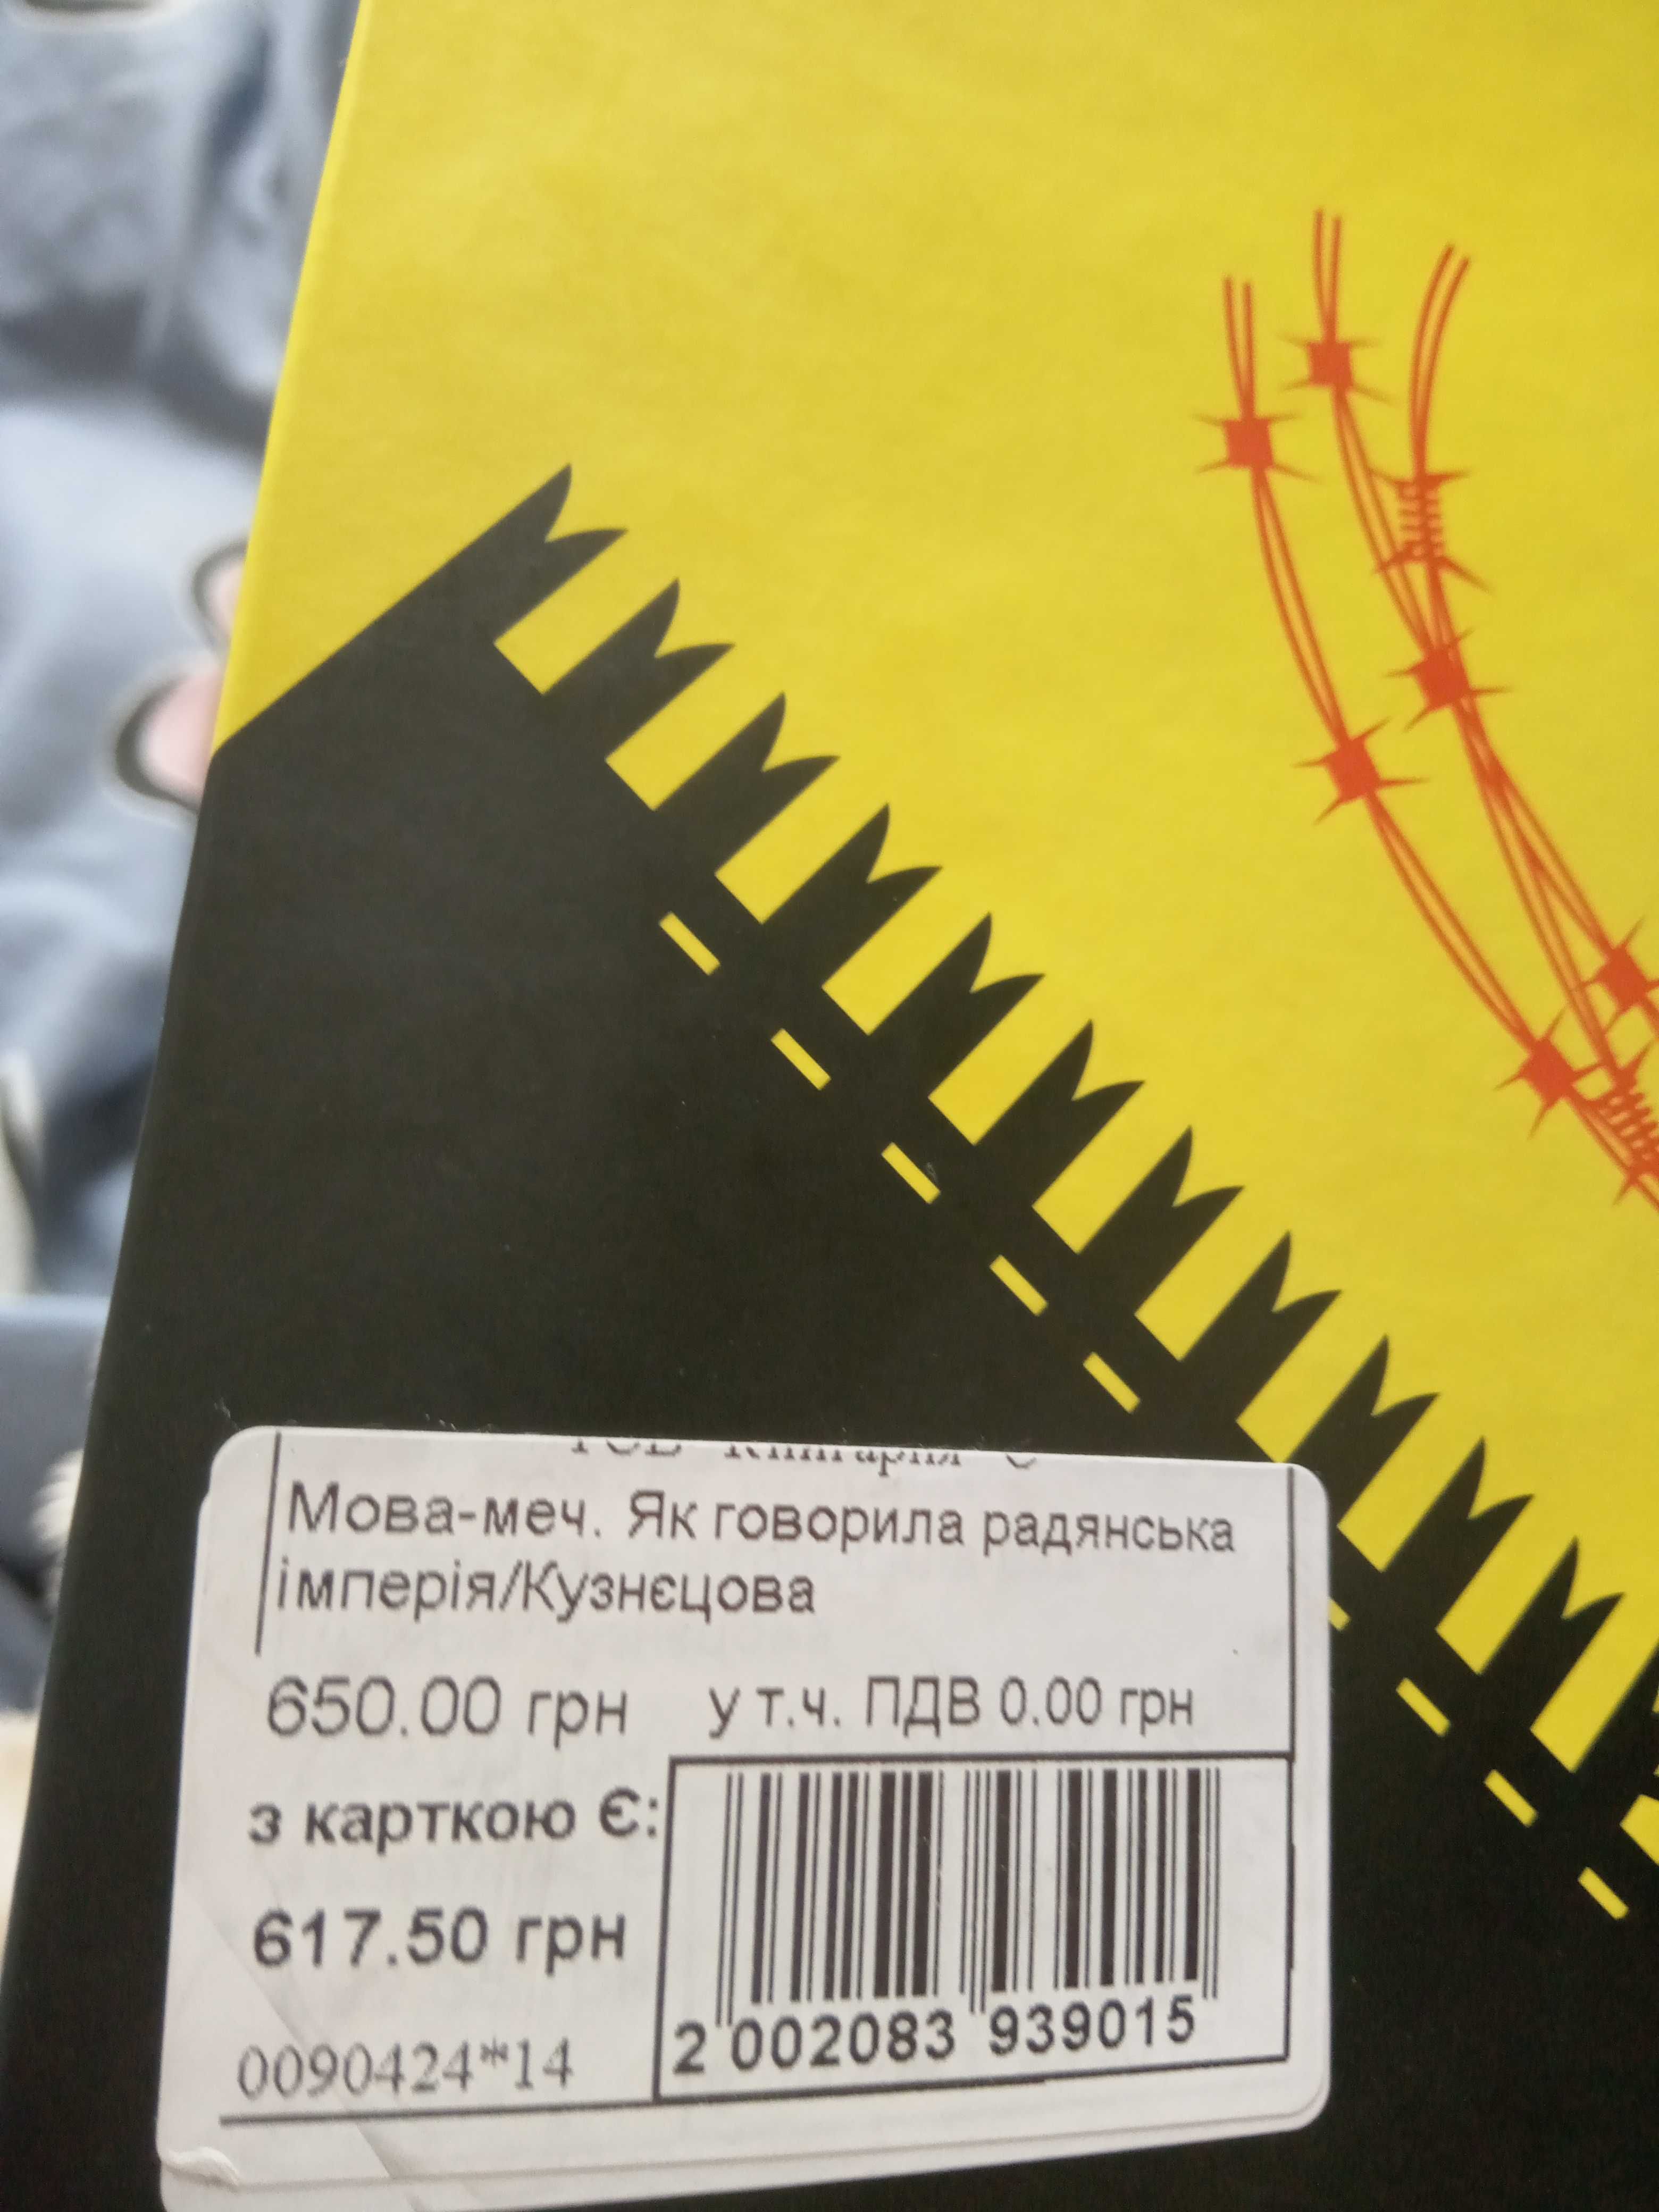 Продам книгу "Мова-меч" Євгенії Кузнєцовой